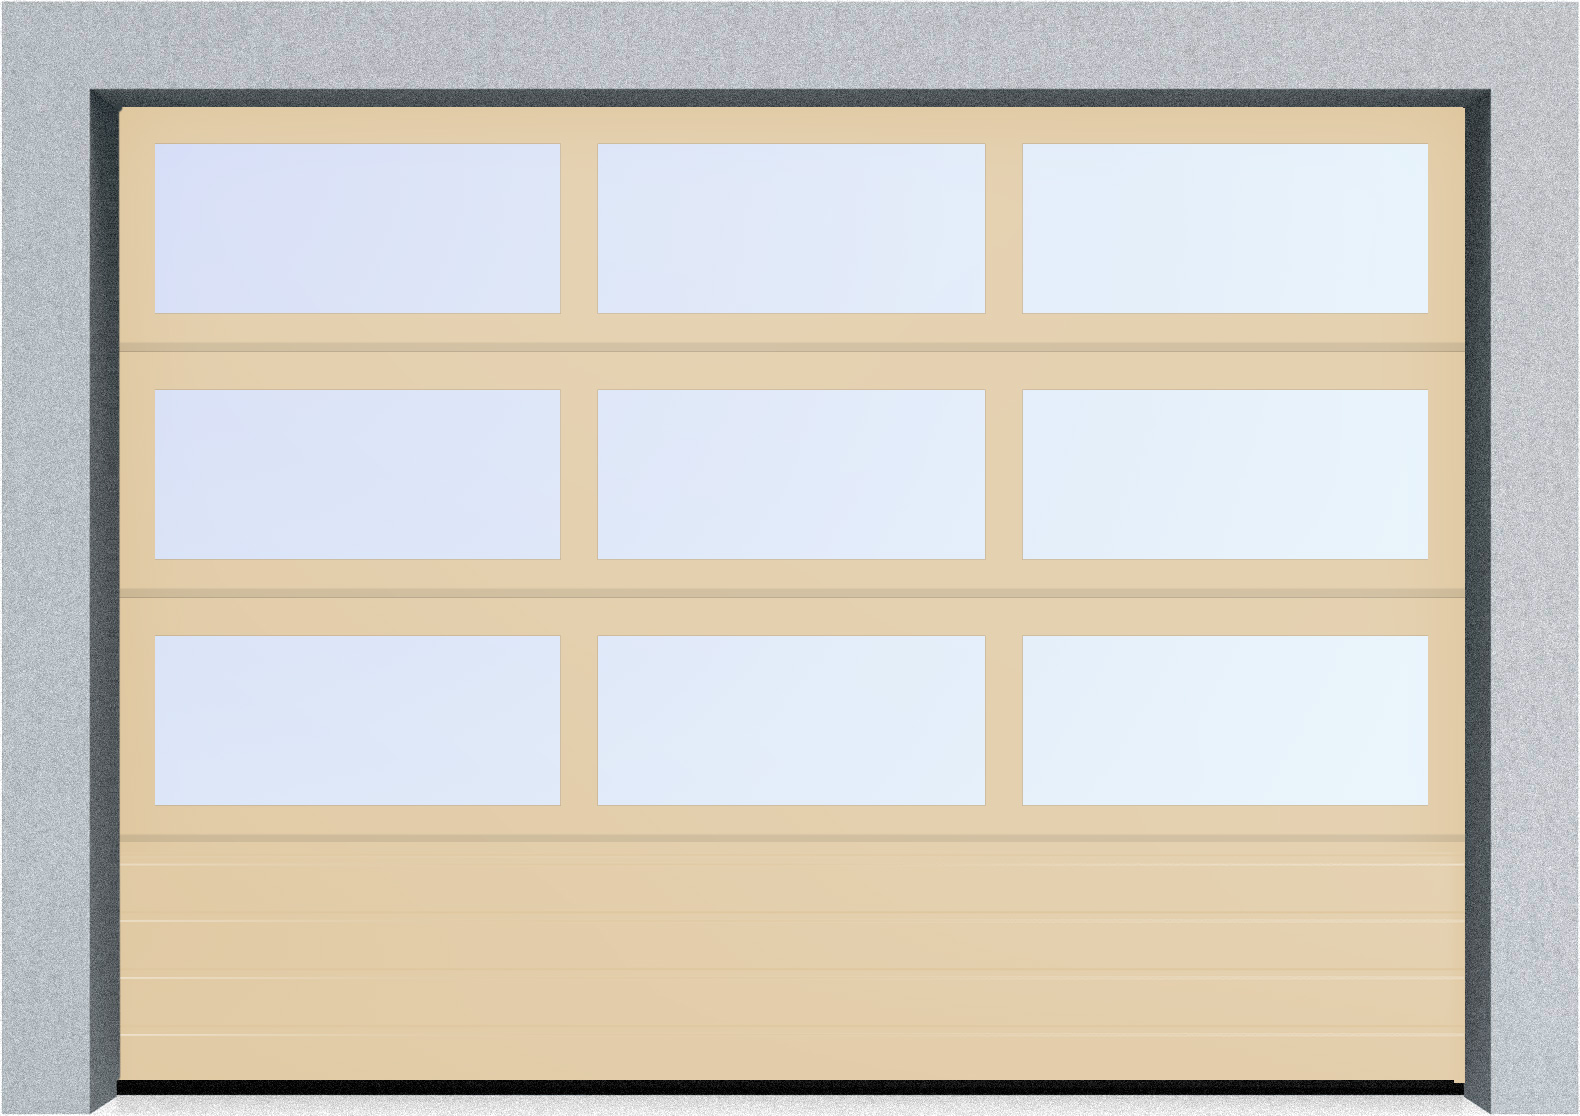  Секционные панорамные ворота серии AluTrend с комбинированным типом полотна (АЛПС) 5125х6000 нижняя панель S-гофр, Микроволна стандартные цвета, фото 2 